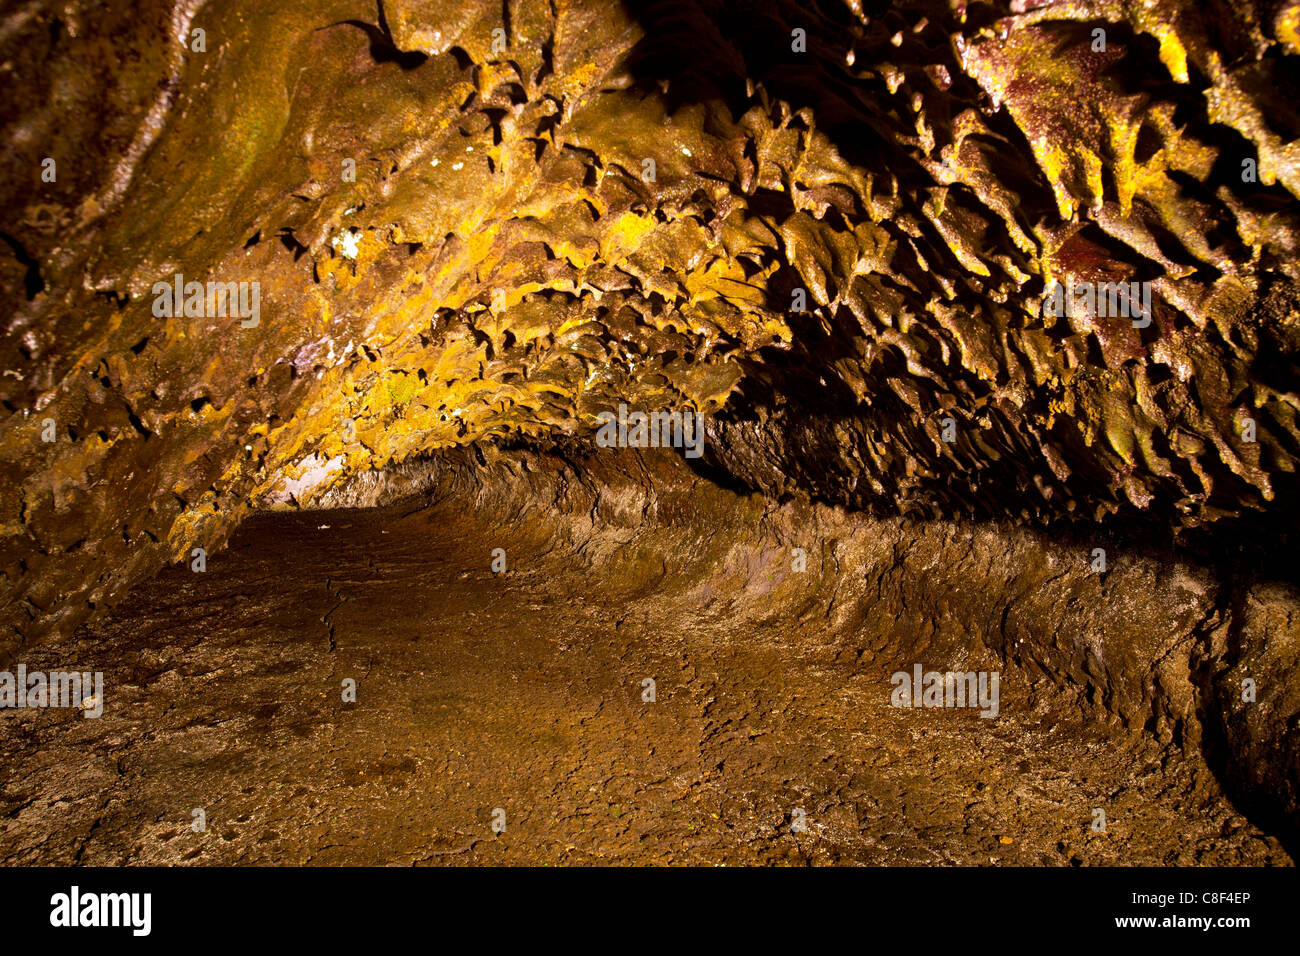 Grutas de Sao Vicente, Portogallo, Europa, Madera, grotta grotta lavica, vulcanismo Foto Stock